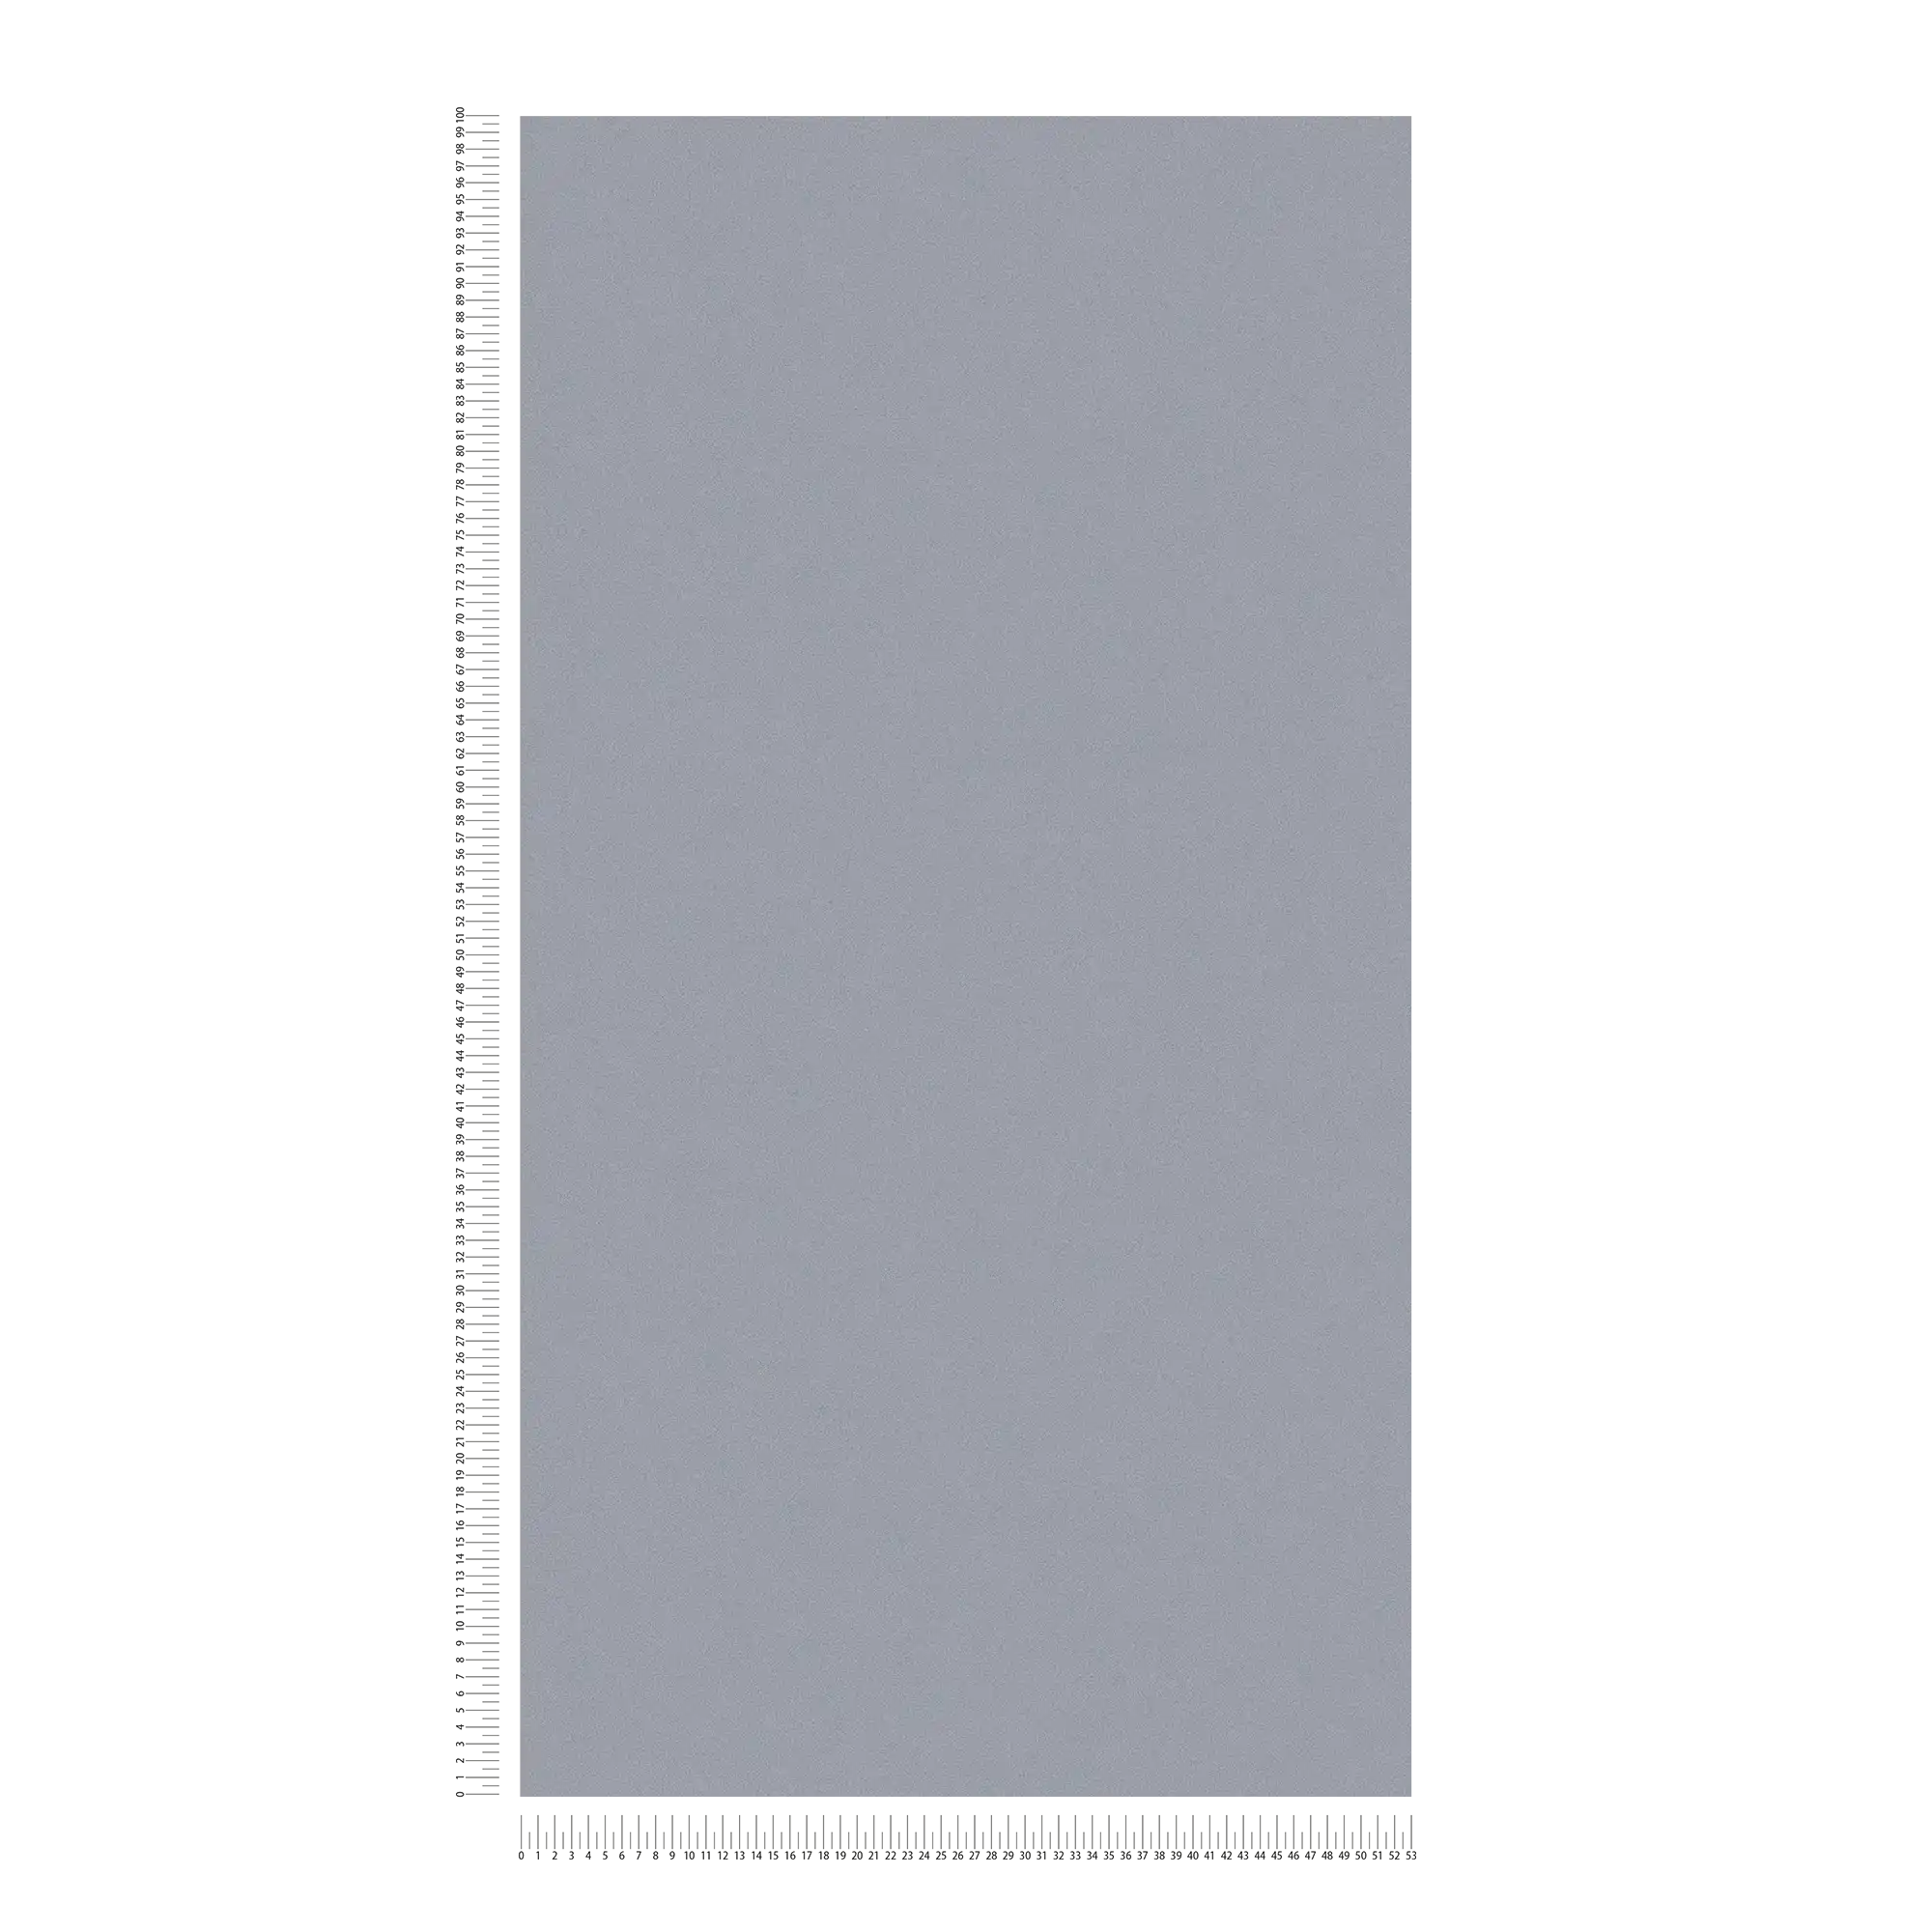             Vliesbehang grijs met structuurpatroon & matte kleur
        